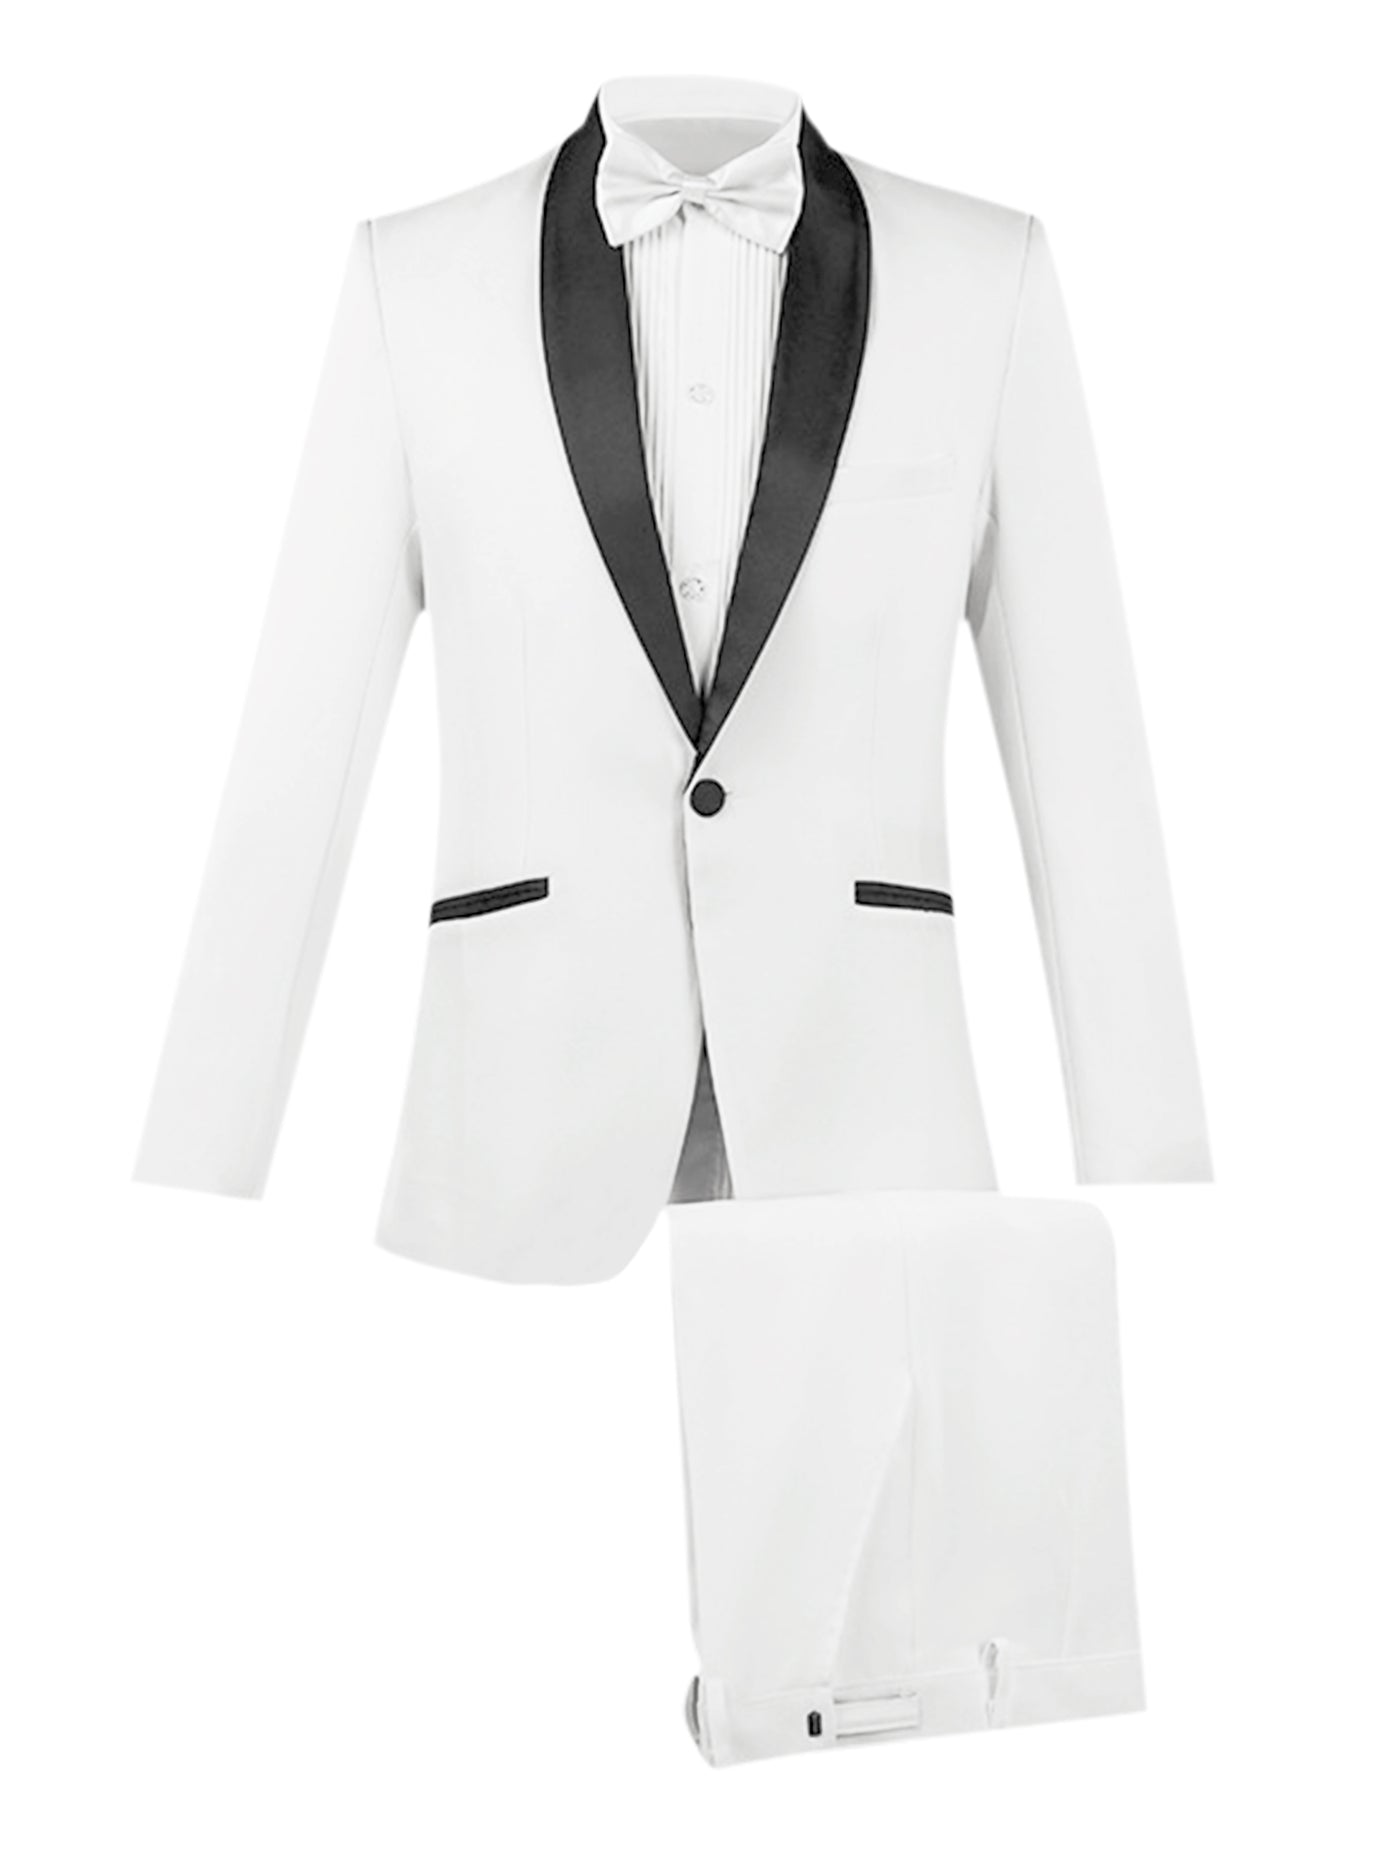 Bublédon Two Piece Suit Set for Men's Slim Fit Shawl Lapel Party Prom Dress Blazer Pants